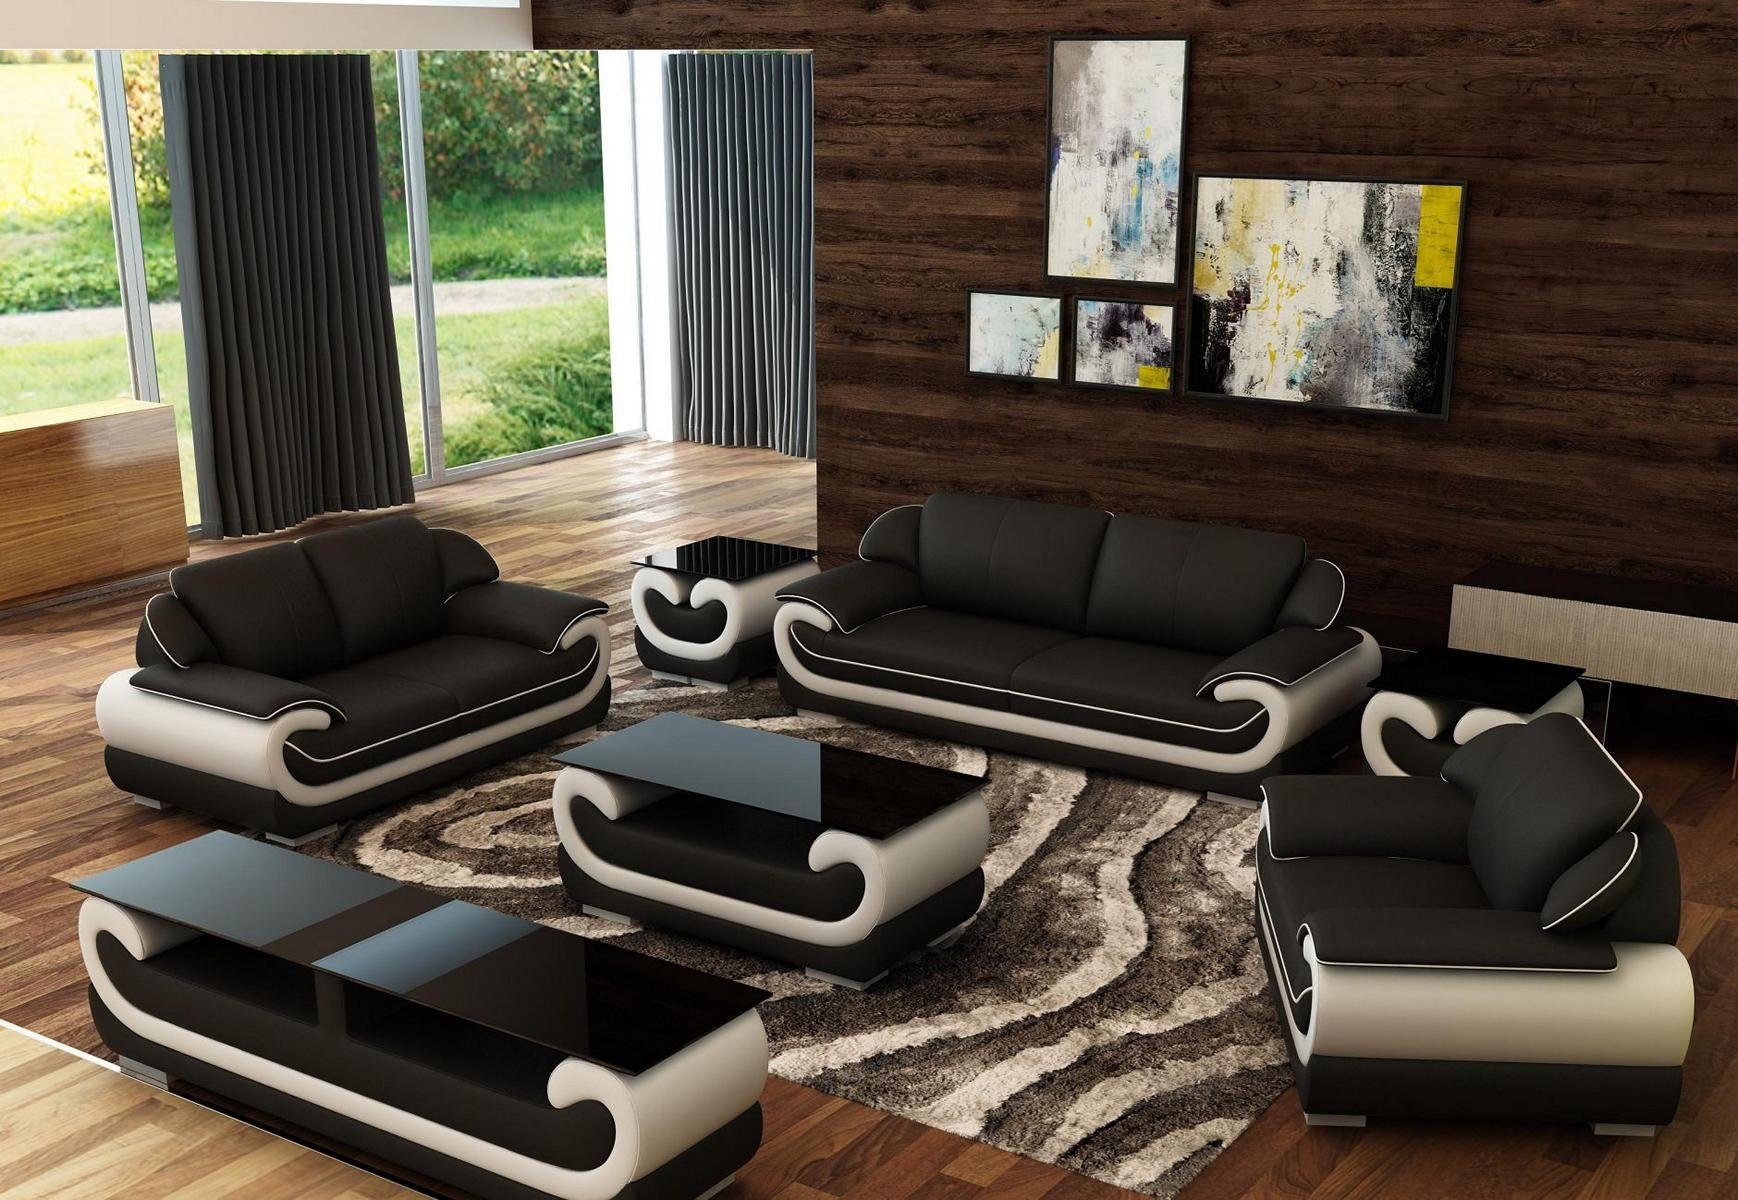 Leder Polster Design Couchen in Made Europe JVmoebel Relax, Set Sofa Sofas Schwarz/Beige 3+2+1 Sitzer Sofas